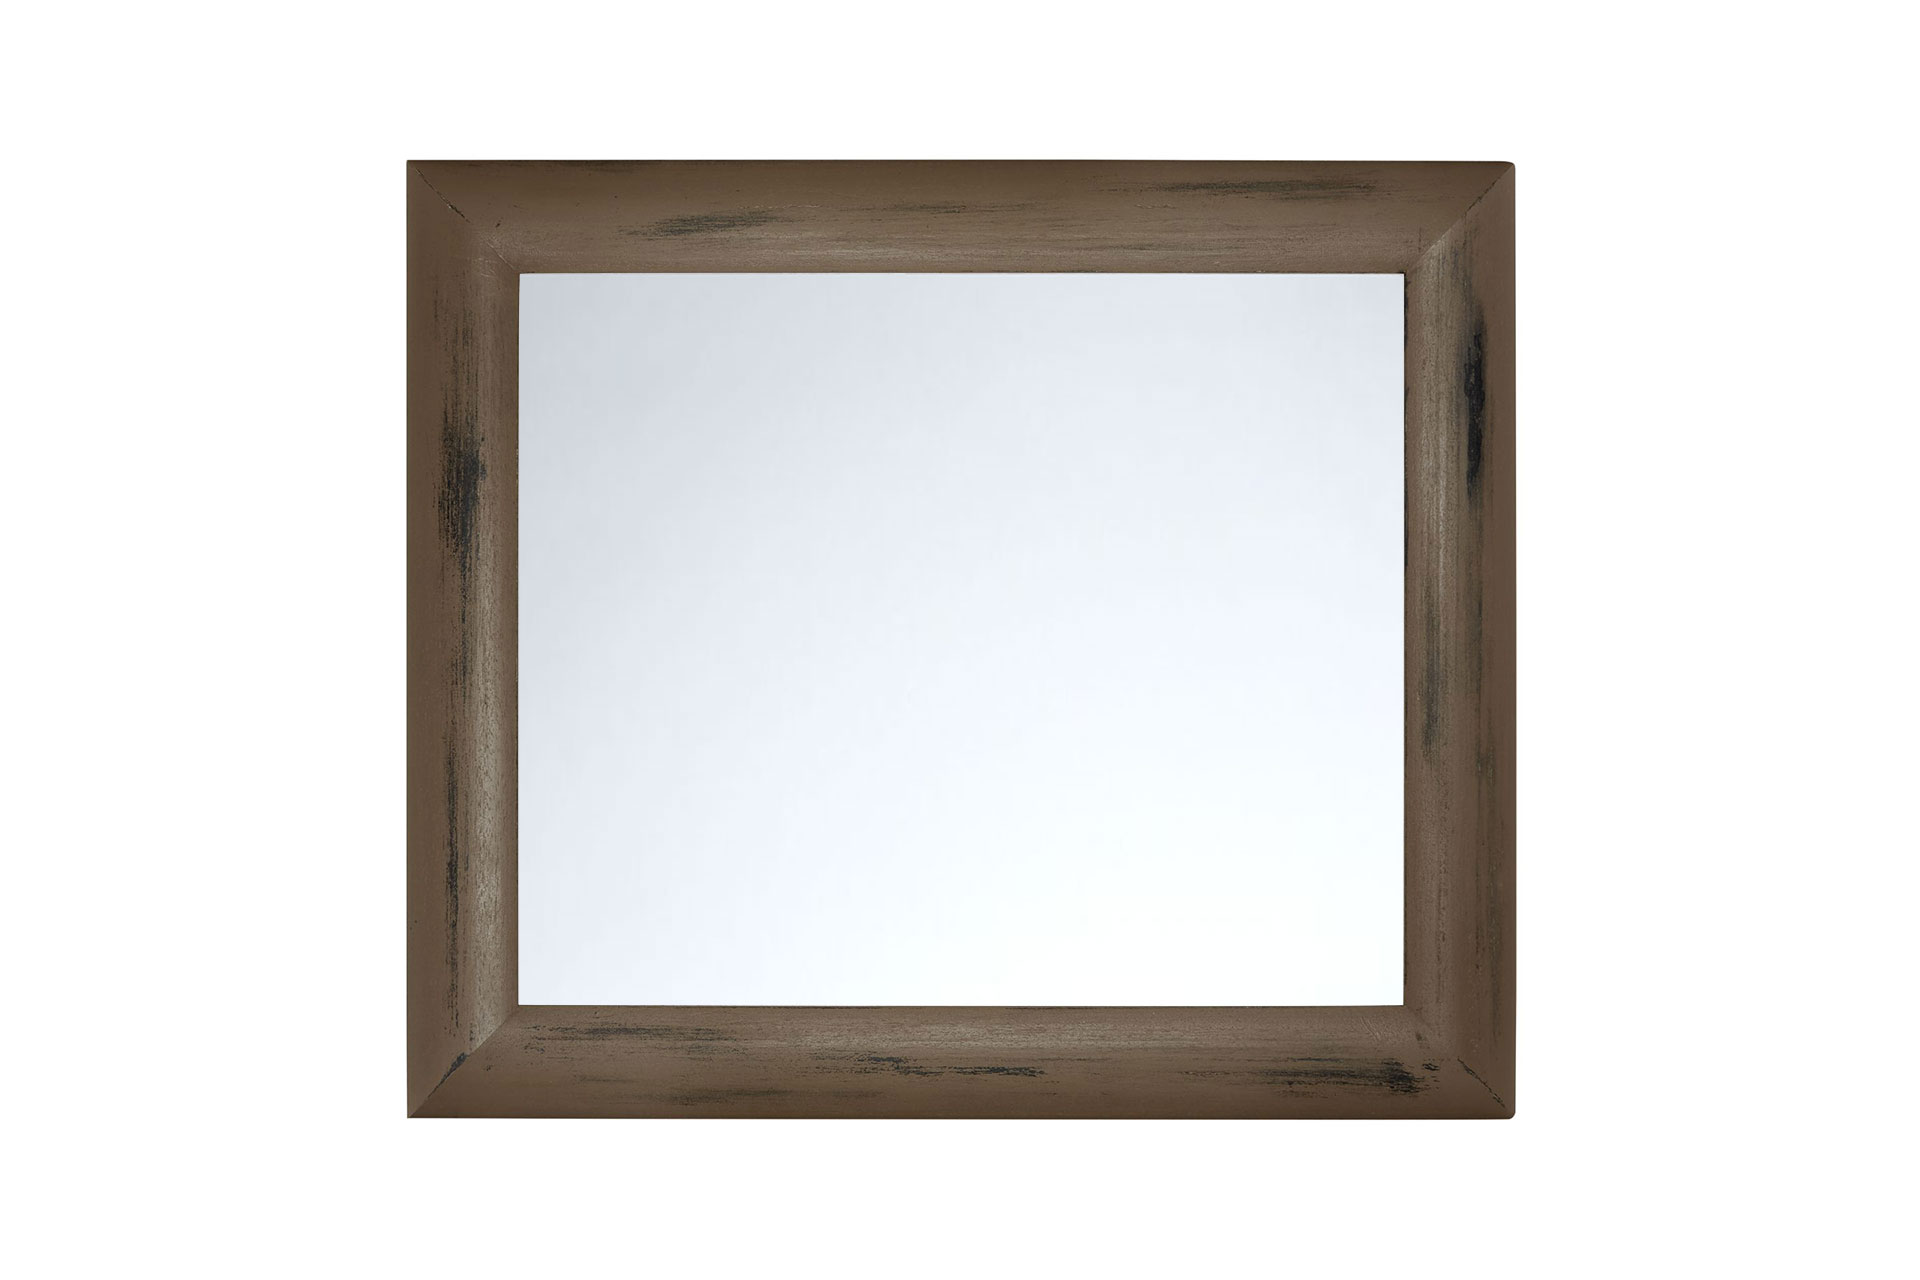 Wandspiegel Modell Bandol, Spiegel: glatt, Shabby-Chic Style, Design/Farbe: schwarz, blassbraun, Raum: Flur, Innenbereich, Schlafzimmer, Wohnzimmer, Frontansicht Rahmen mit Spiegel quer